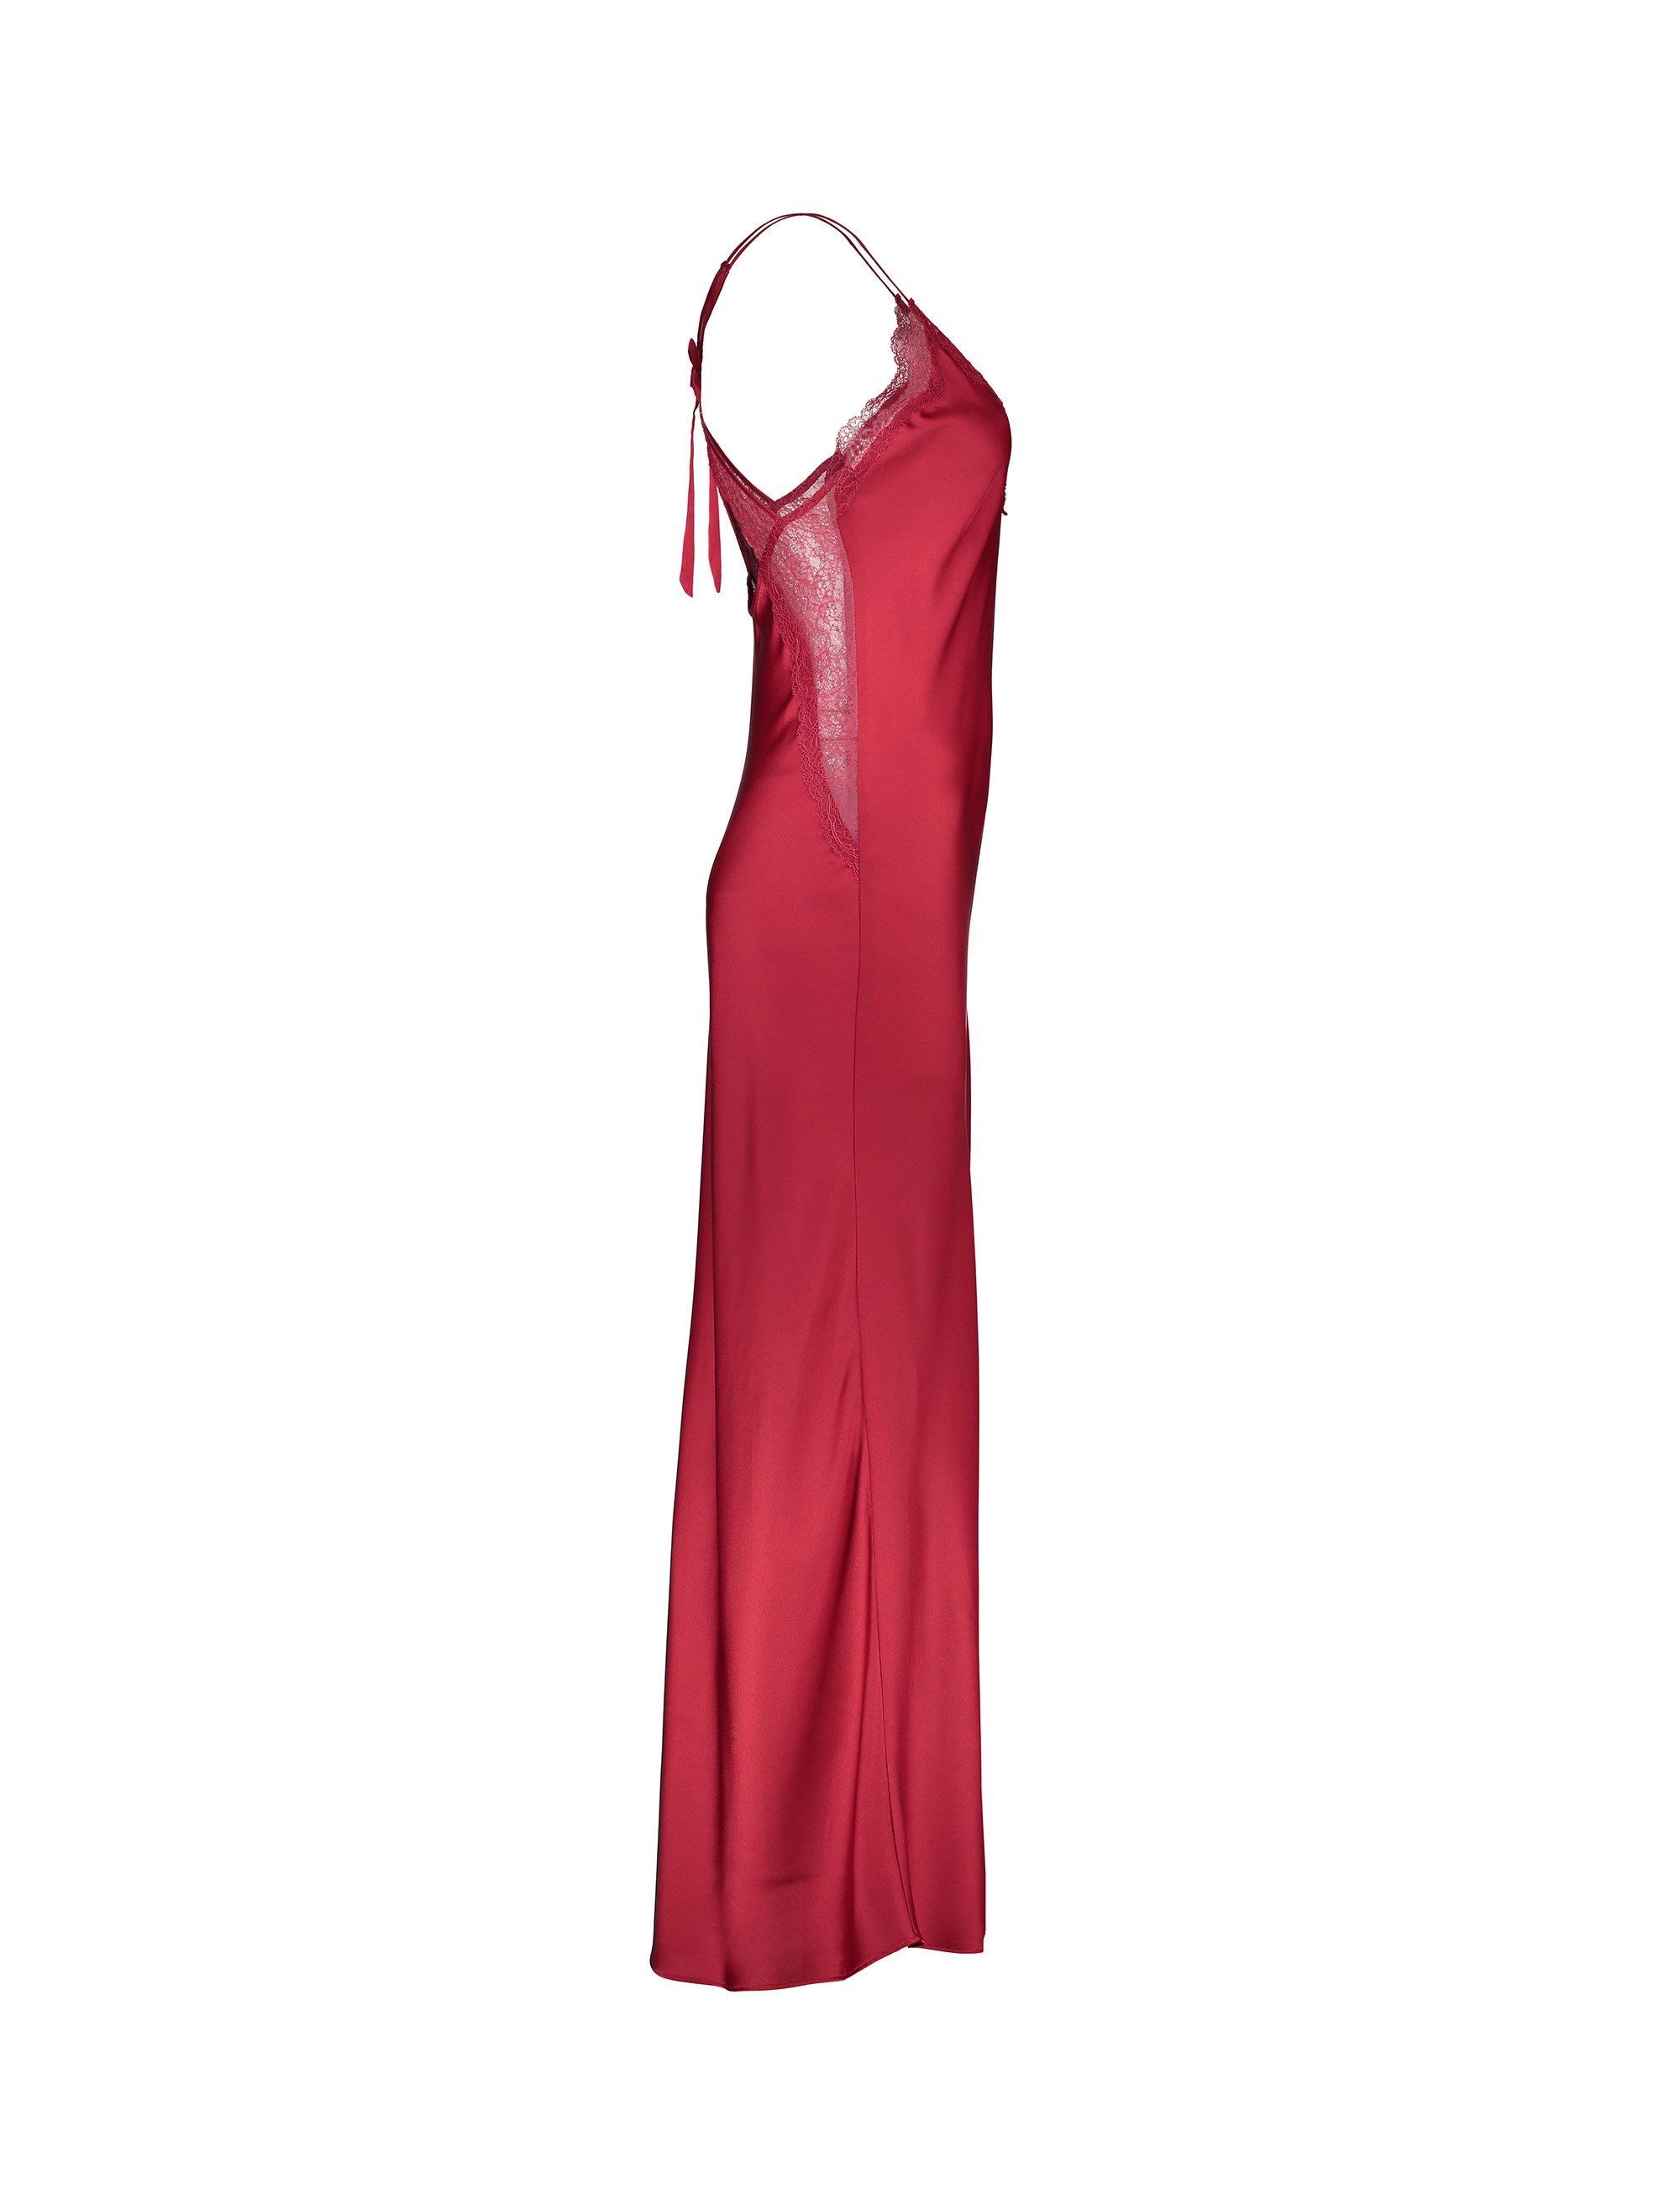 لباس خواب بلند زنانه - اتام - قرمز - 5